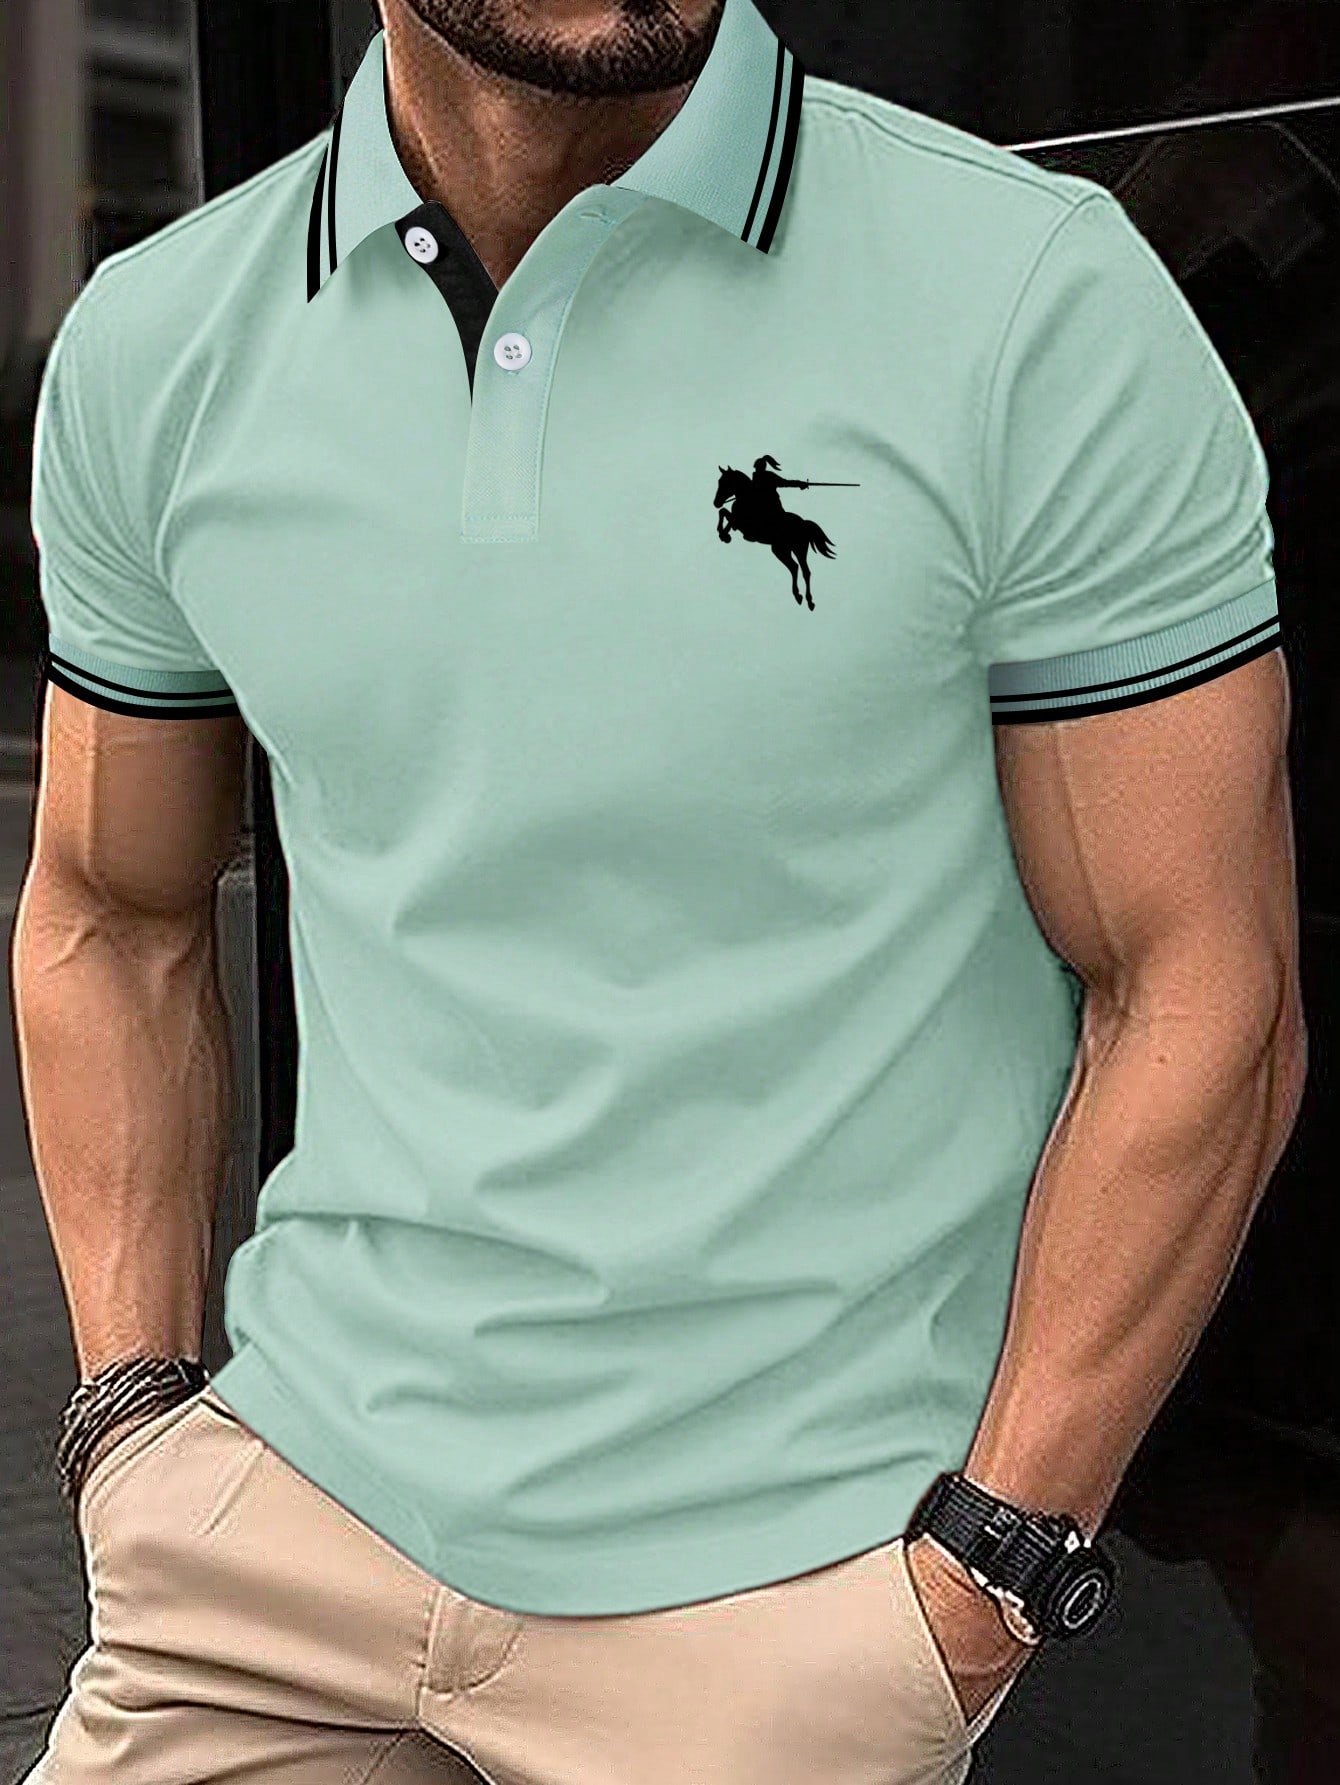 Мужская рубашка-поло с короткими рукавами и контрастной каймой Manfinity, зеленый рубашка поло с короткими рукавами – мужская smartwool цвет almond heather